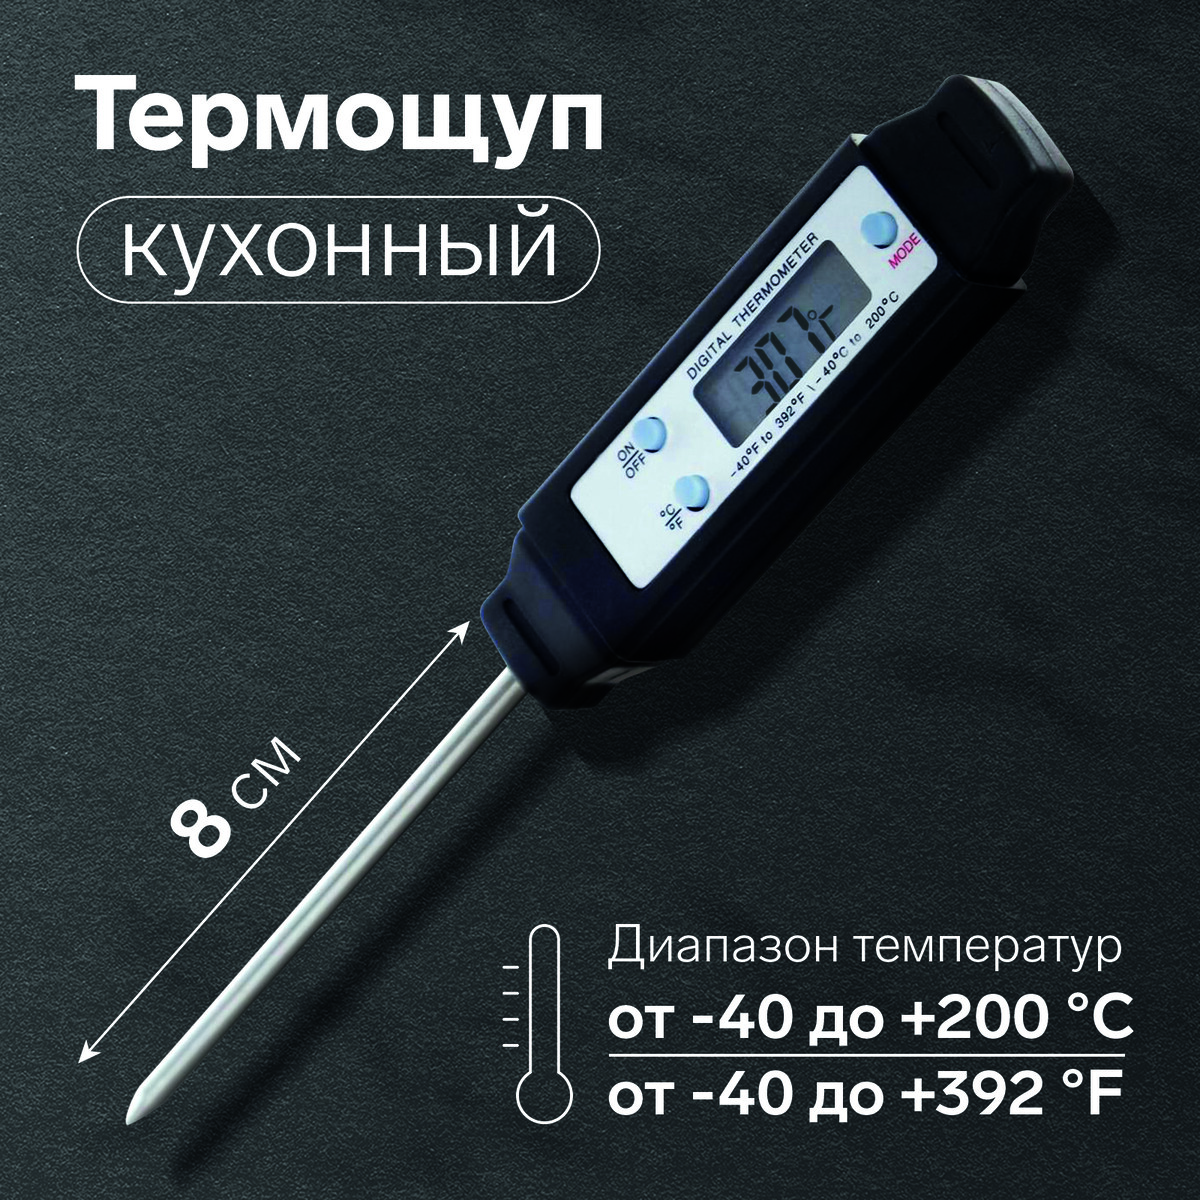 Термощуп кухонный ltp-001, максимальная температура 200 °c, от батареек lr44, черный термощуп кухонный ltp 001 максимальная температура 200 °c от батареек lr44